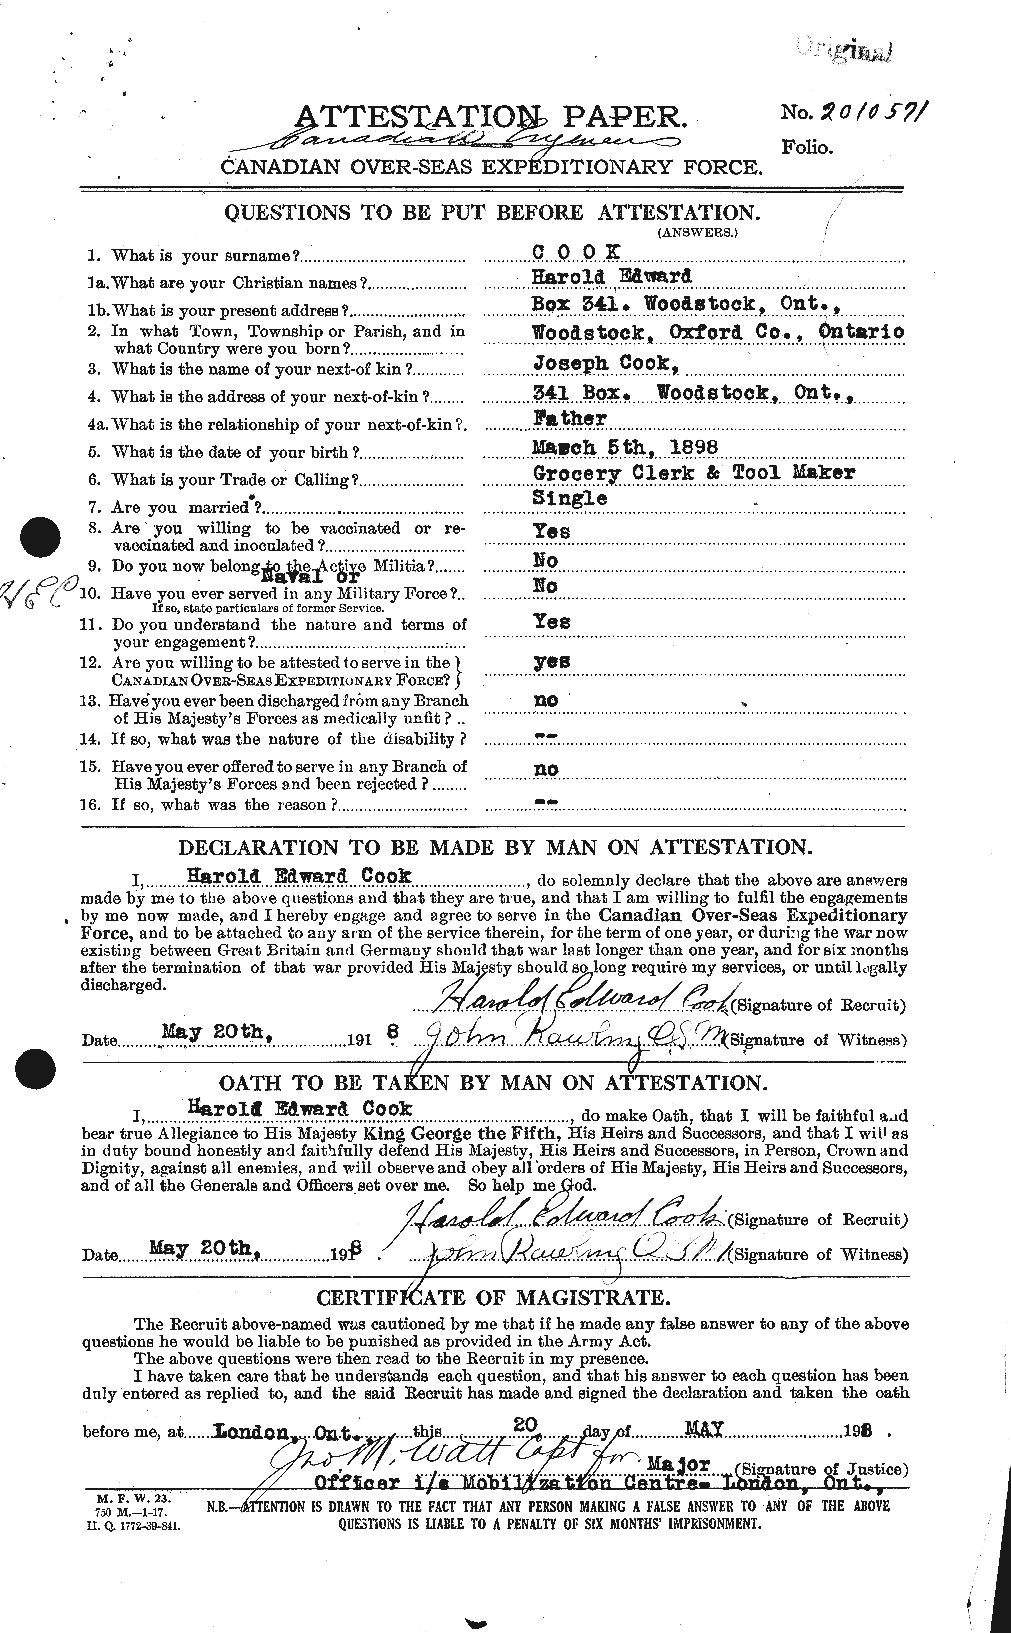 Dossiers du Personnel de la Première Guerre mondiale - CEC 073772a